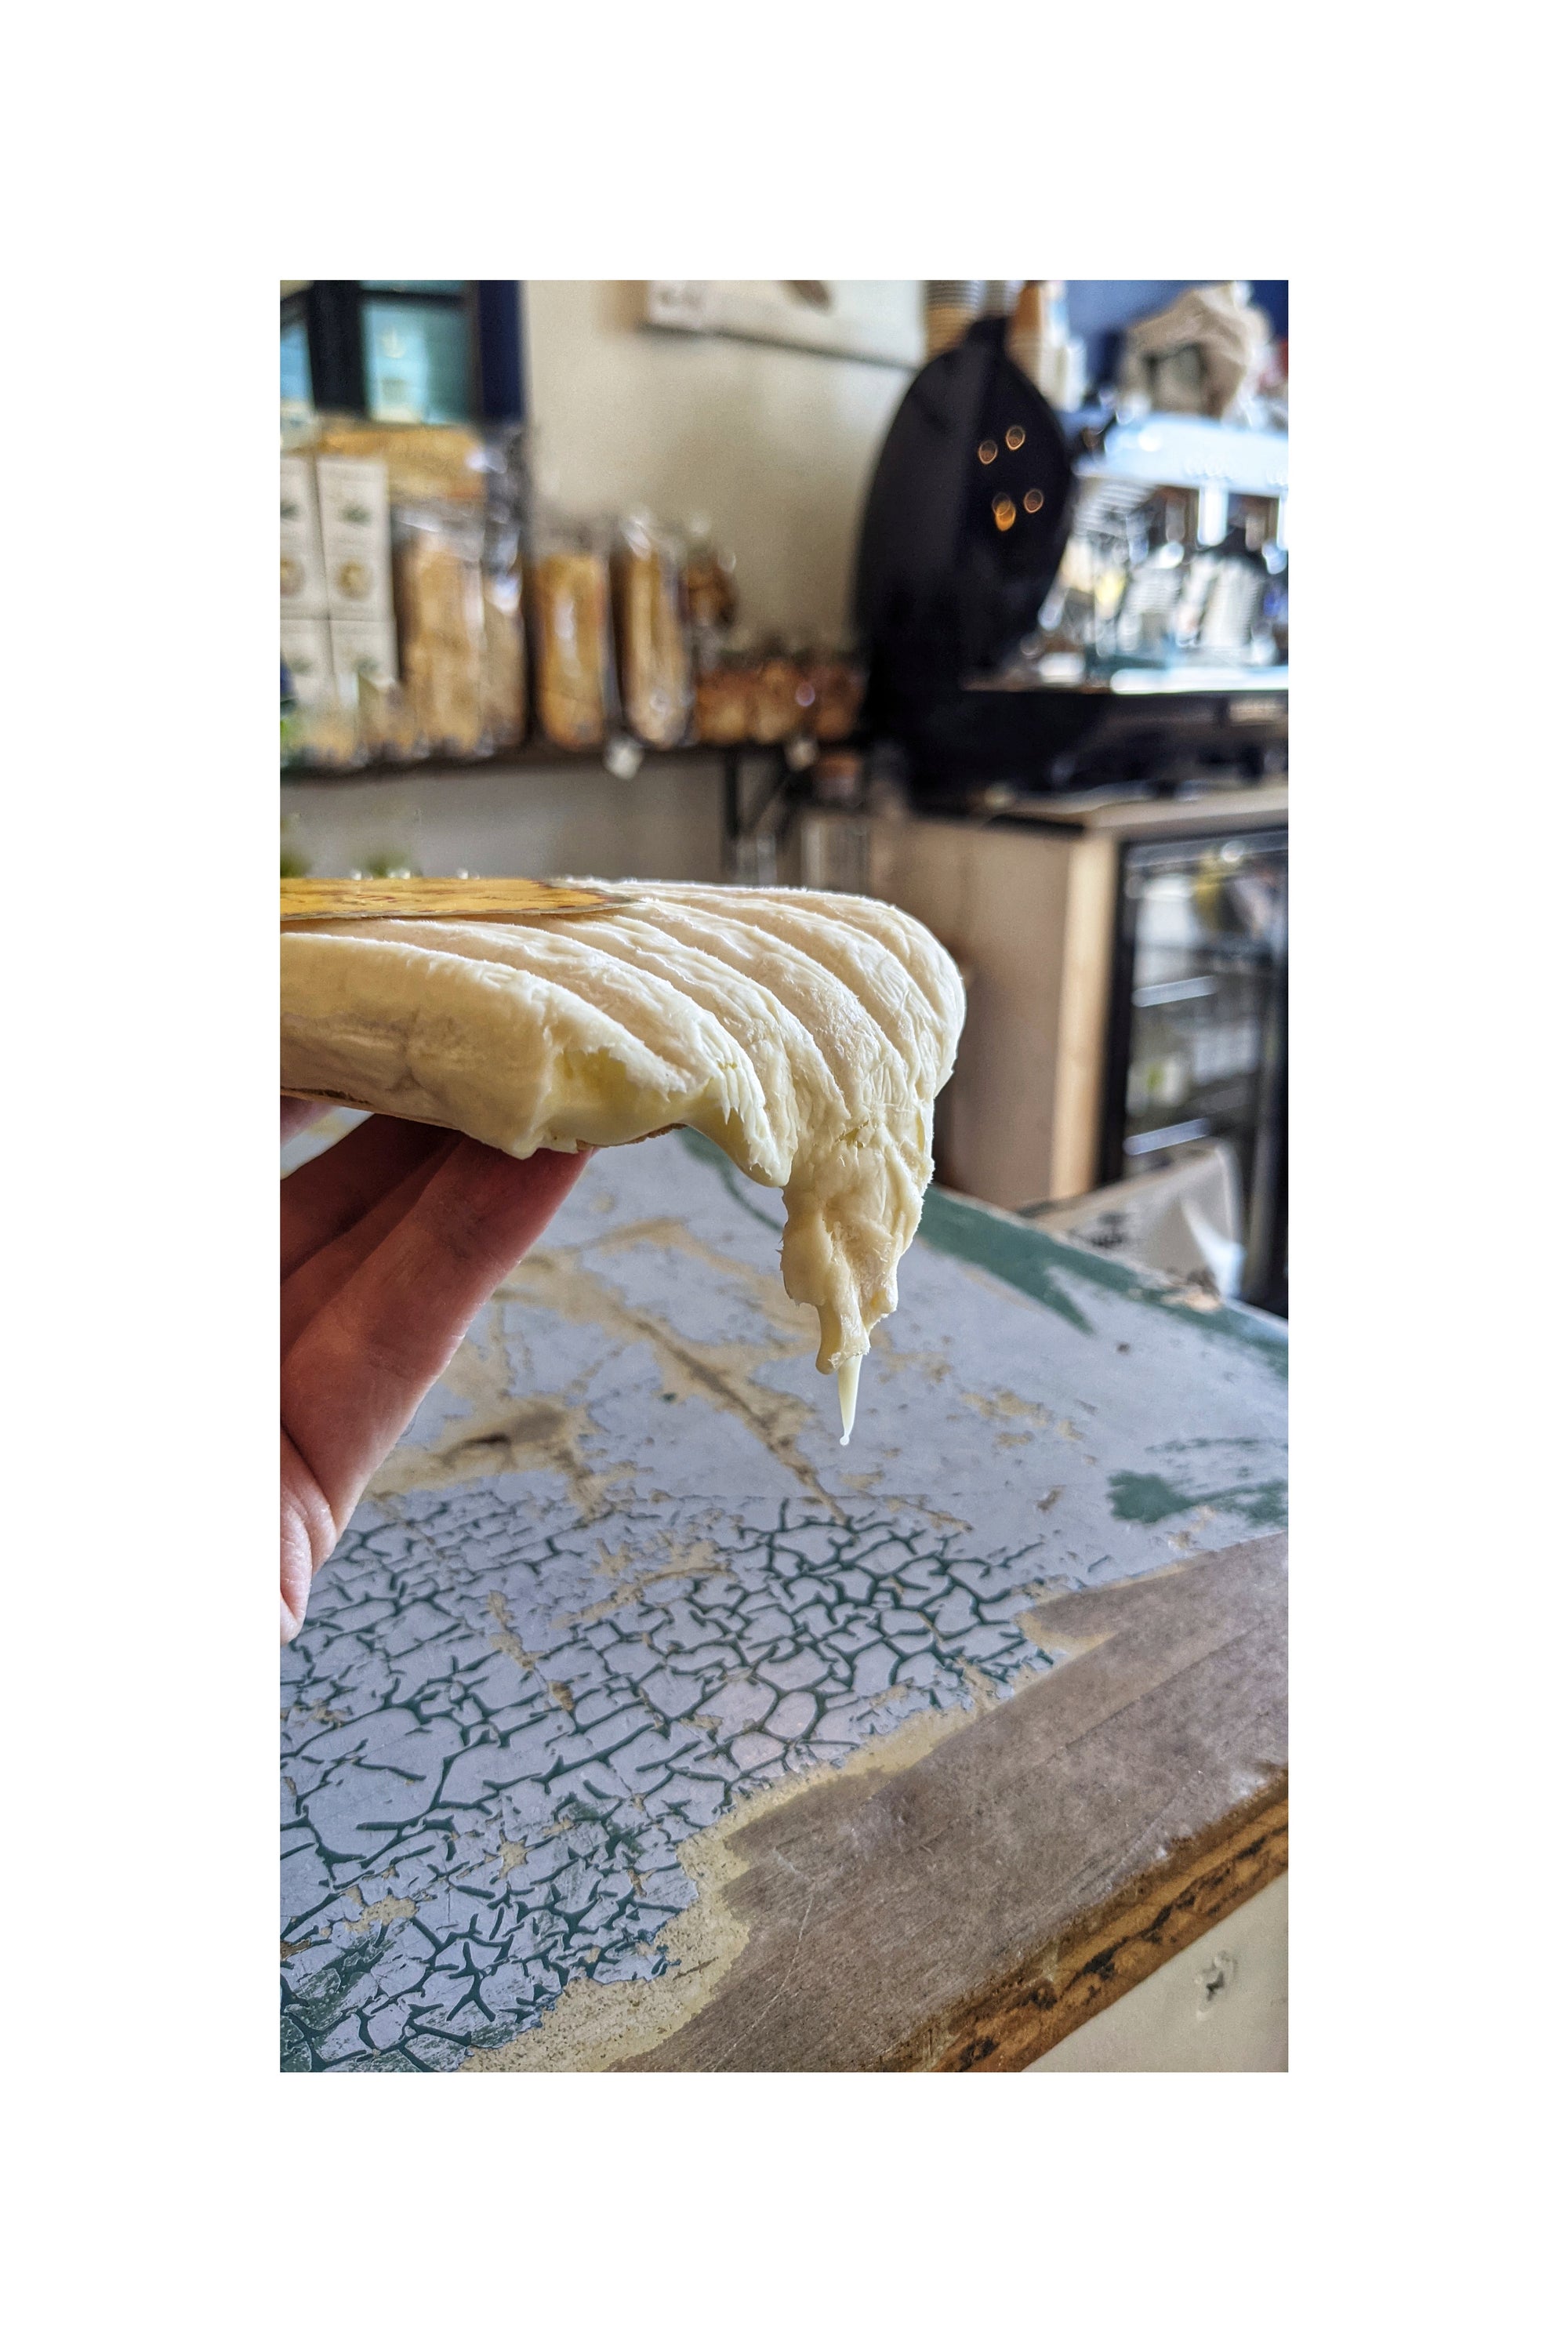 Brie de Jussac -  La Boite a Fromages Sydney - Cheese Shop